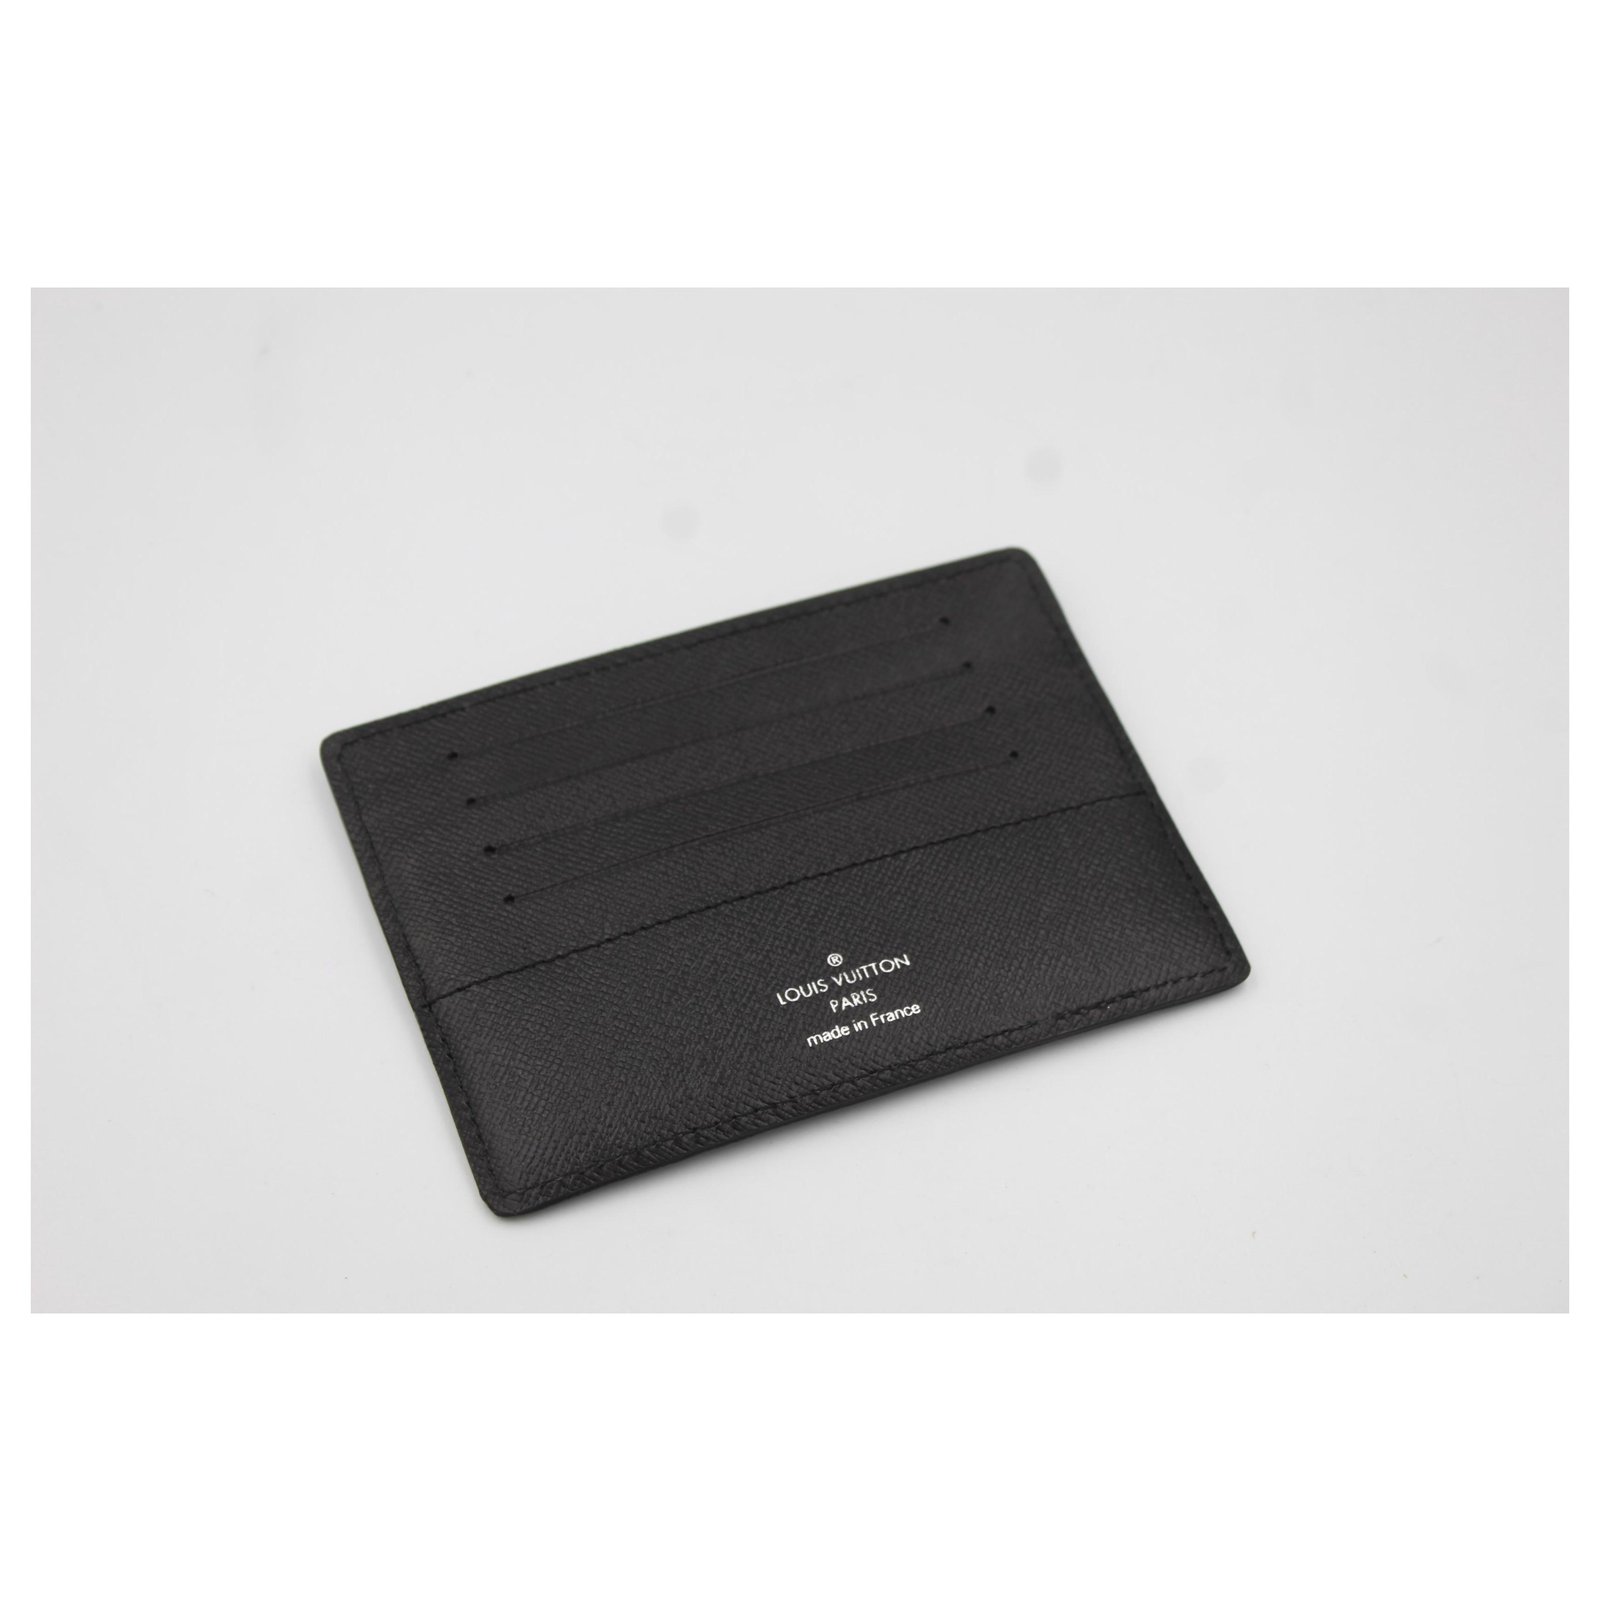 Louis Vuitton card holder in damier monogram.